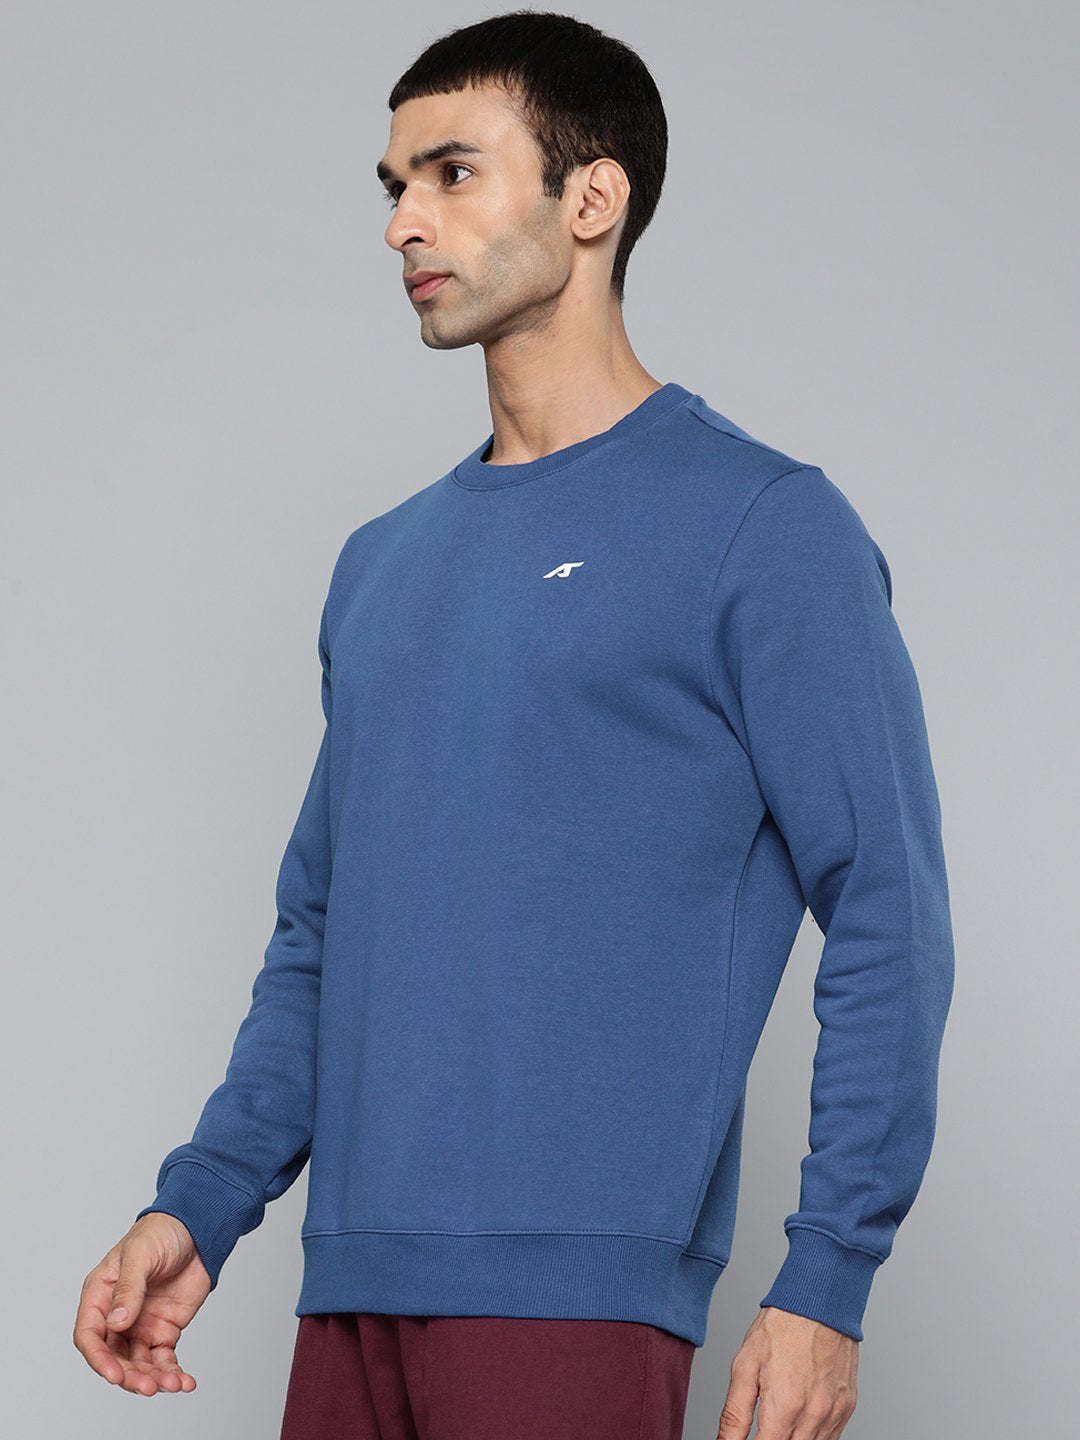 Alcis Men Casual Blue Sweatshirts